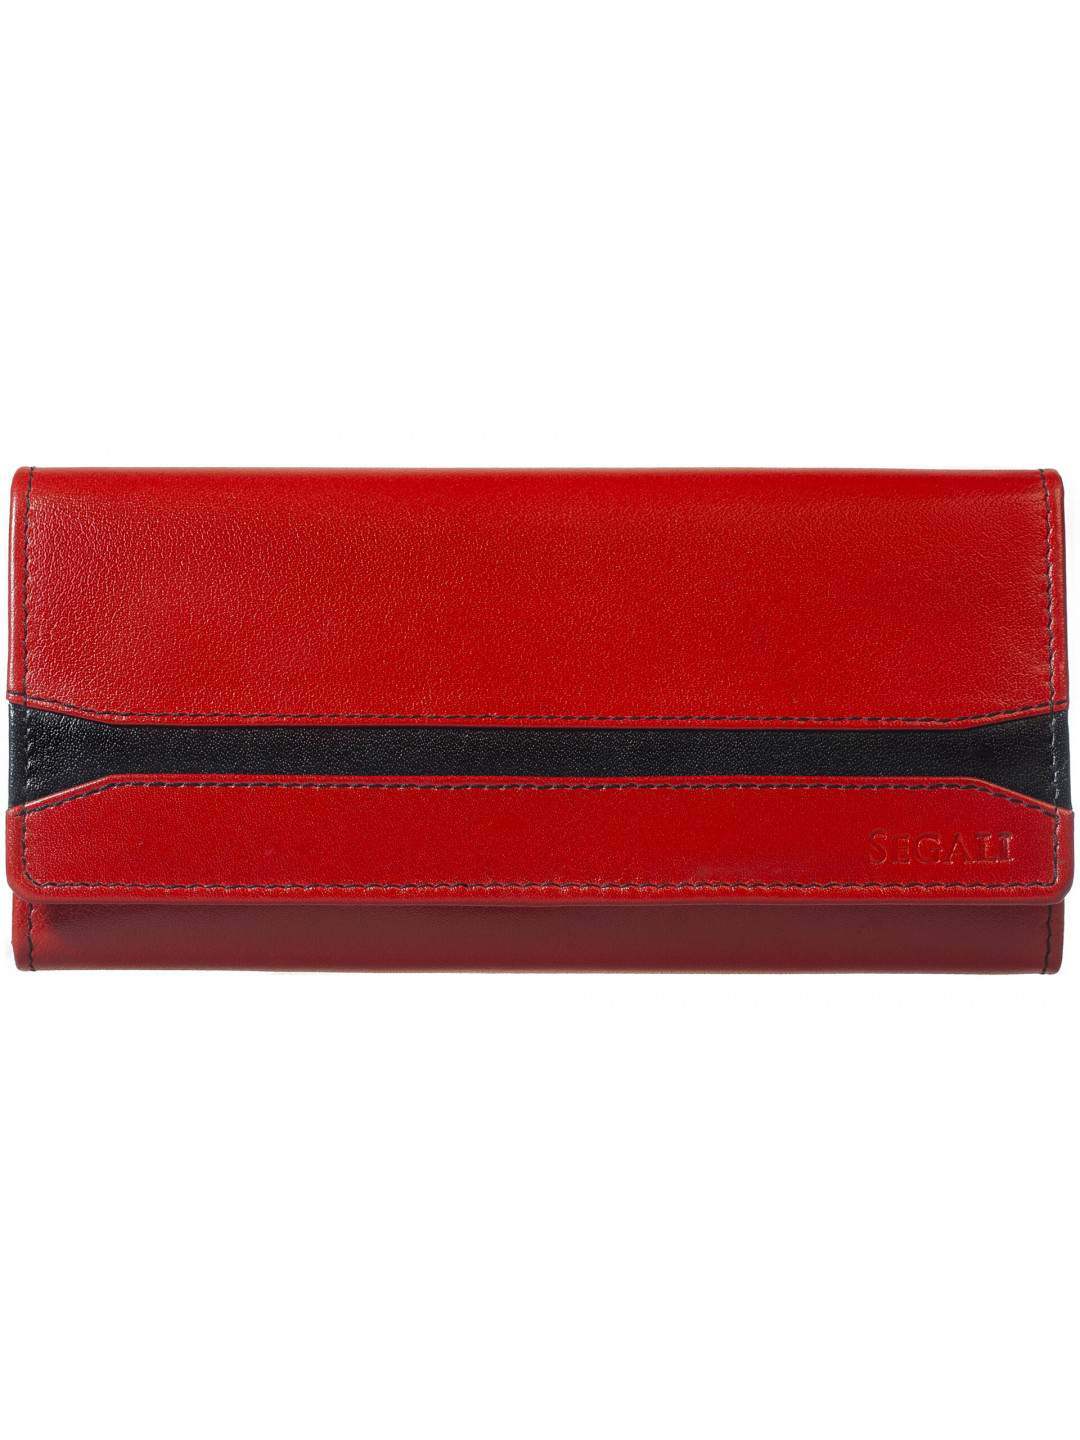 SEGALI Dámská kožená peněženka 2025 A red black